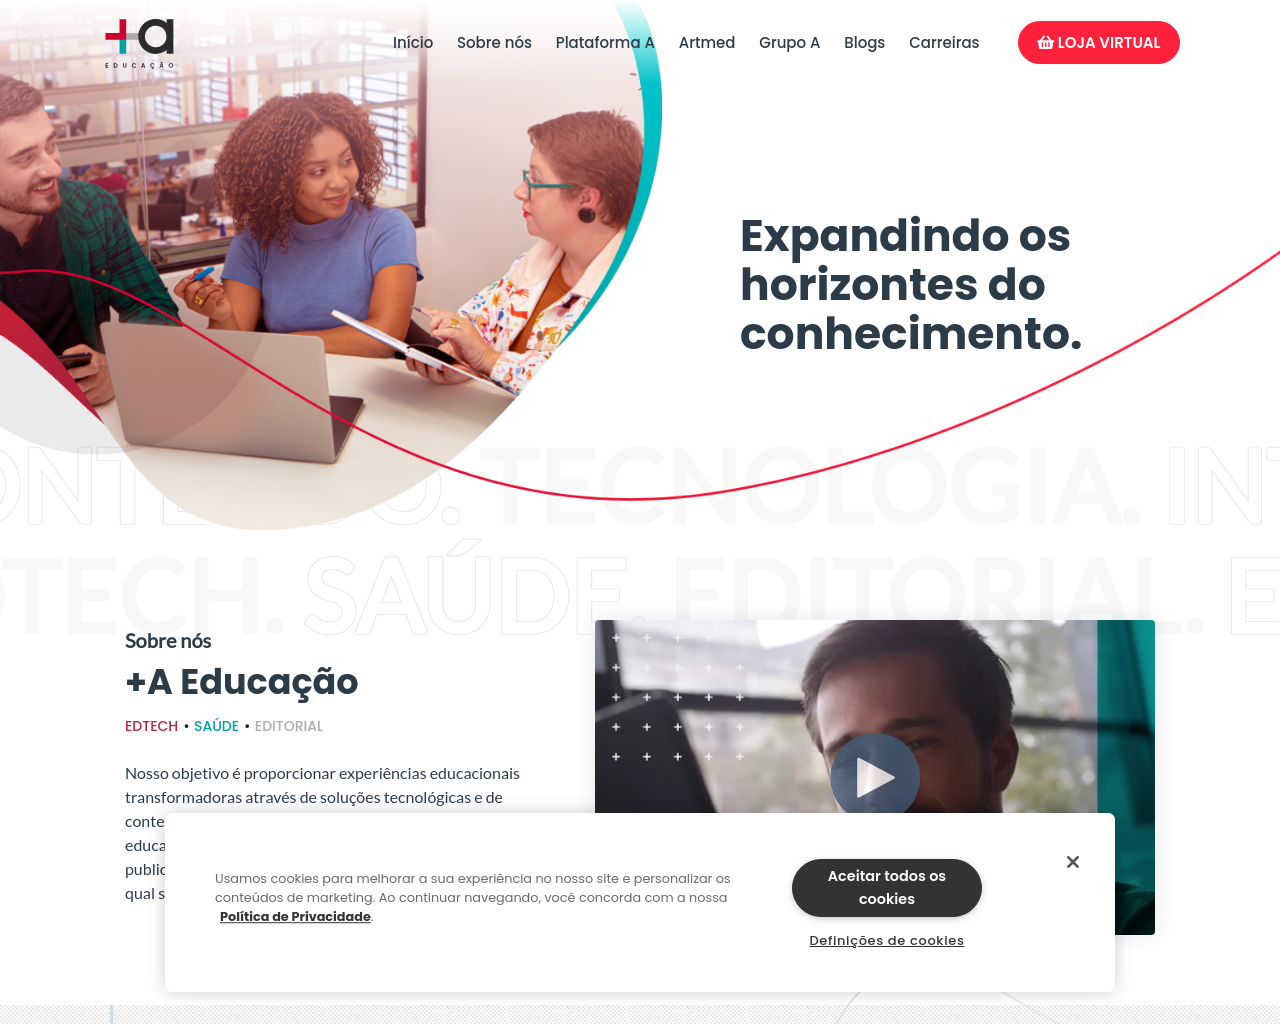 grupoa.com.br